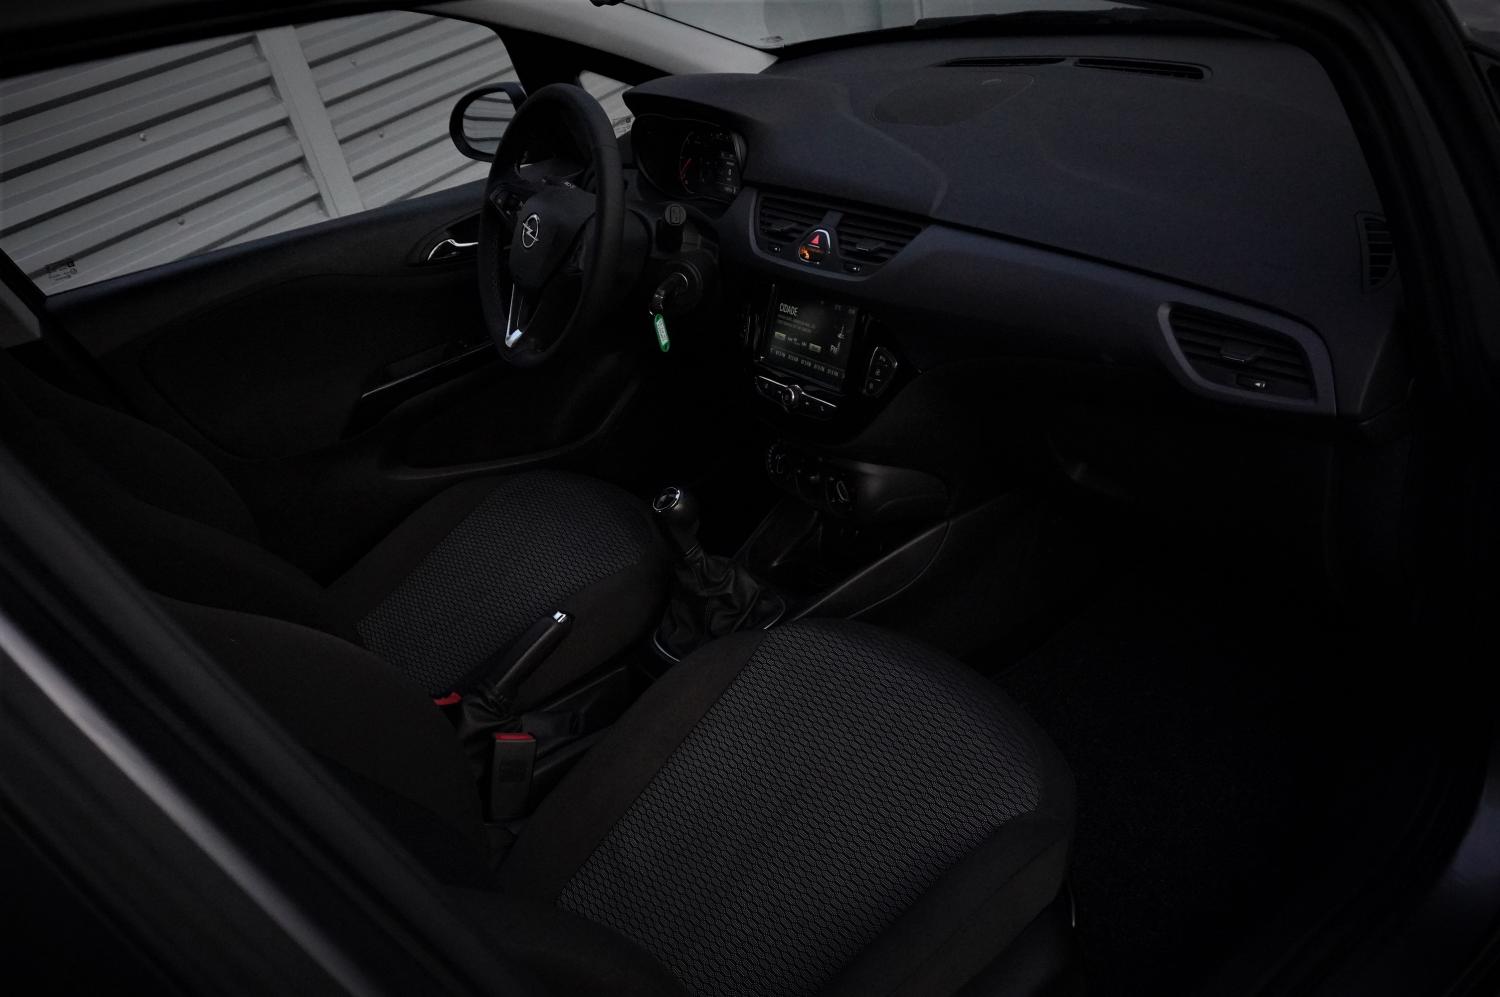 Opel Corsa 1.3 CDTI 95HP S/S DYNAMIC GPS